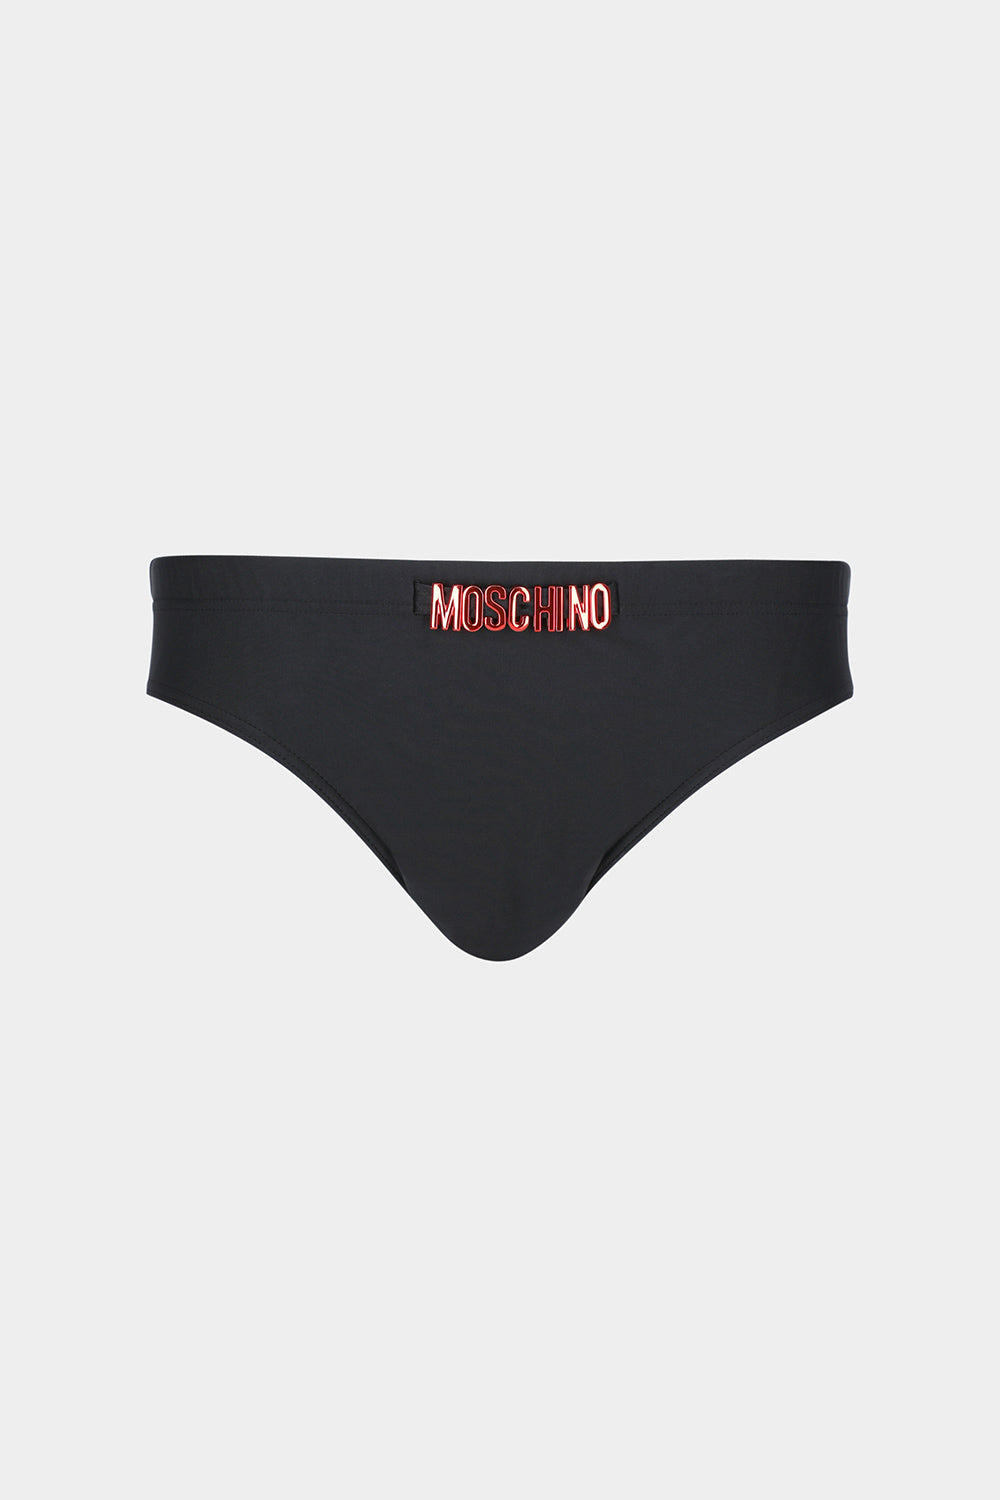 תחתוני ביקיני לנשים לוגו אדום MOSCHINO Vendome online | ונדום .